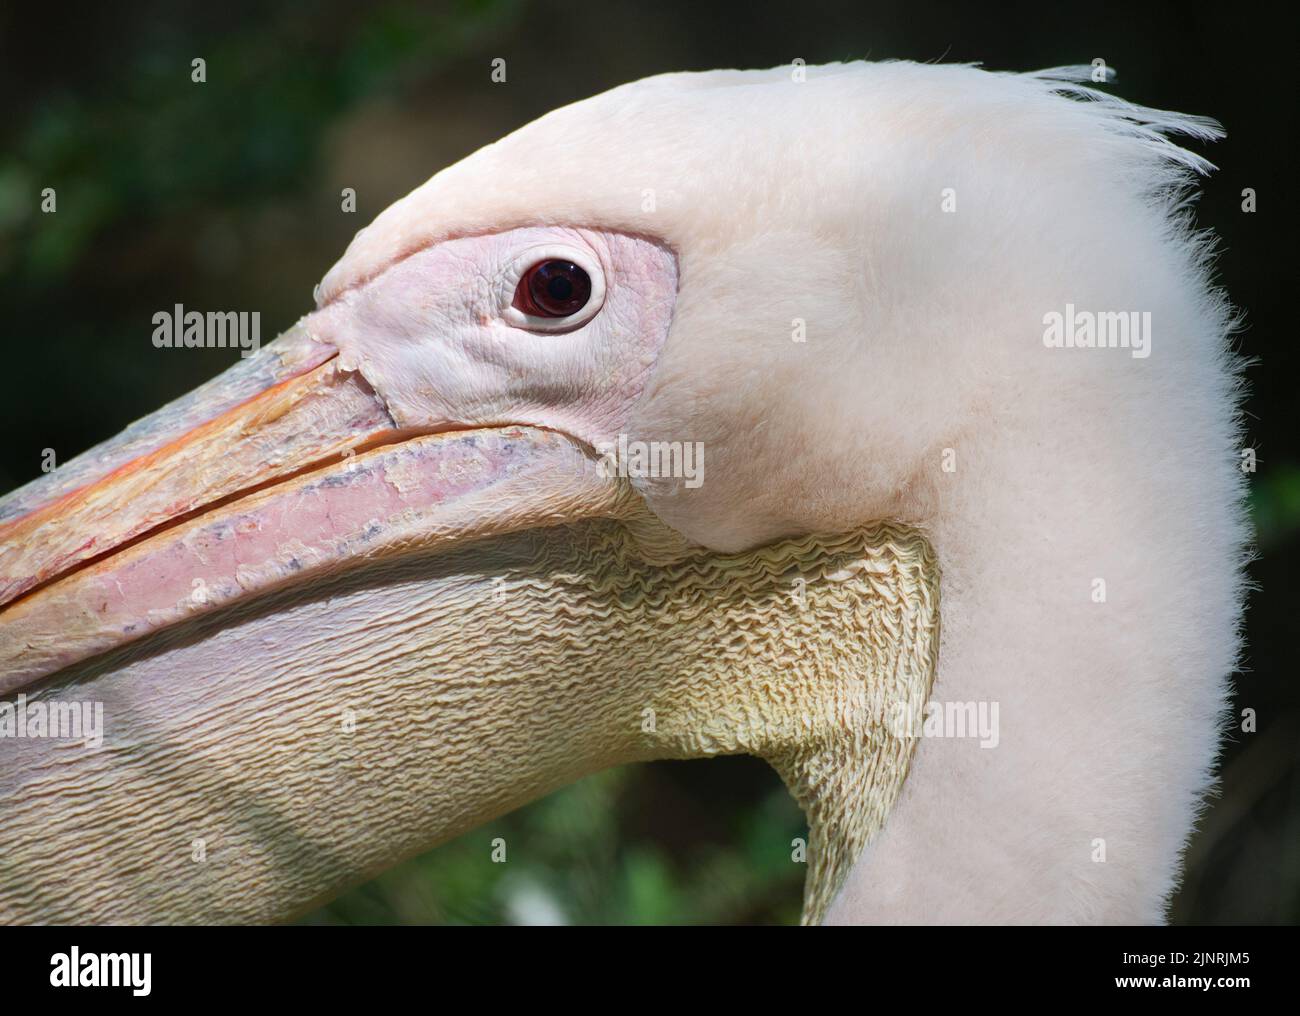 Gran Pelican Blanco, Pelecanus onocrotalus, mostrando los detalles de la cabeza. Especie también conocida como Pelican Blanco del Este, Pelican Rosy o Pelican Blanco. Foto de stock